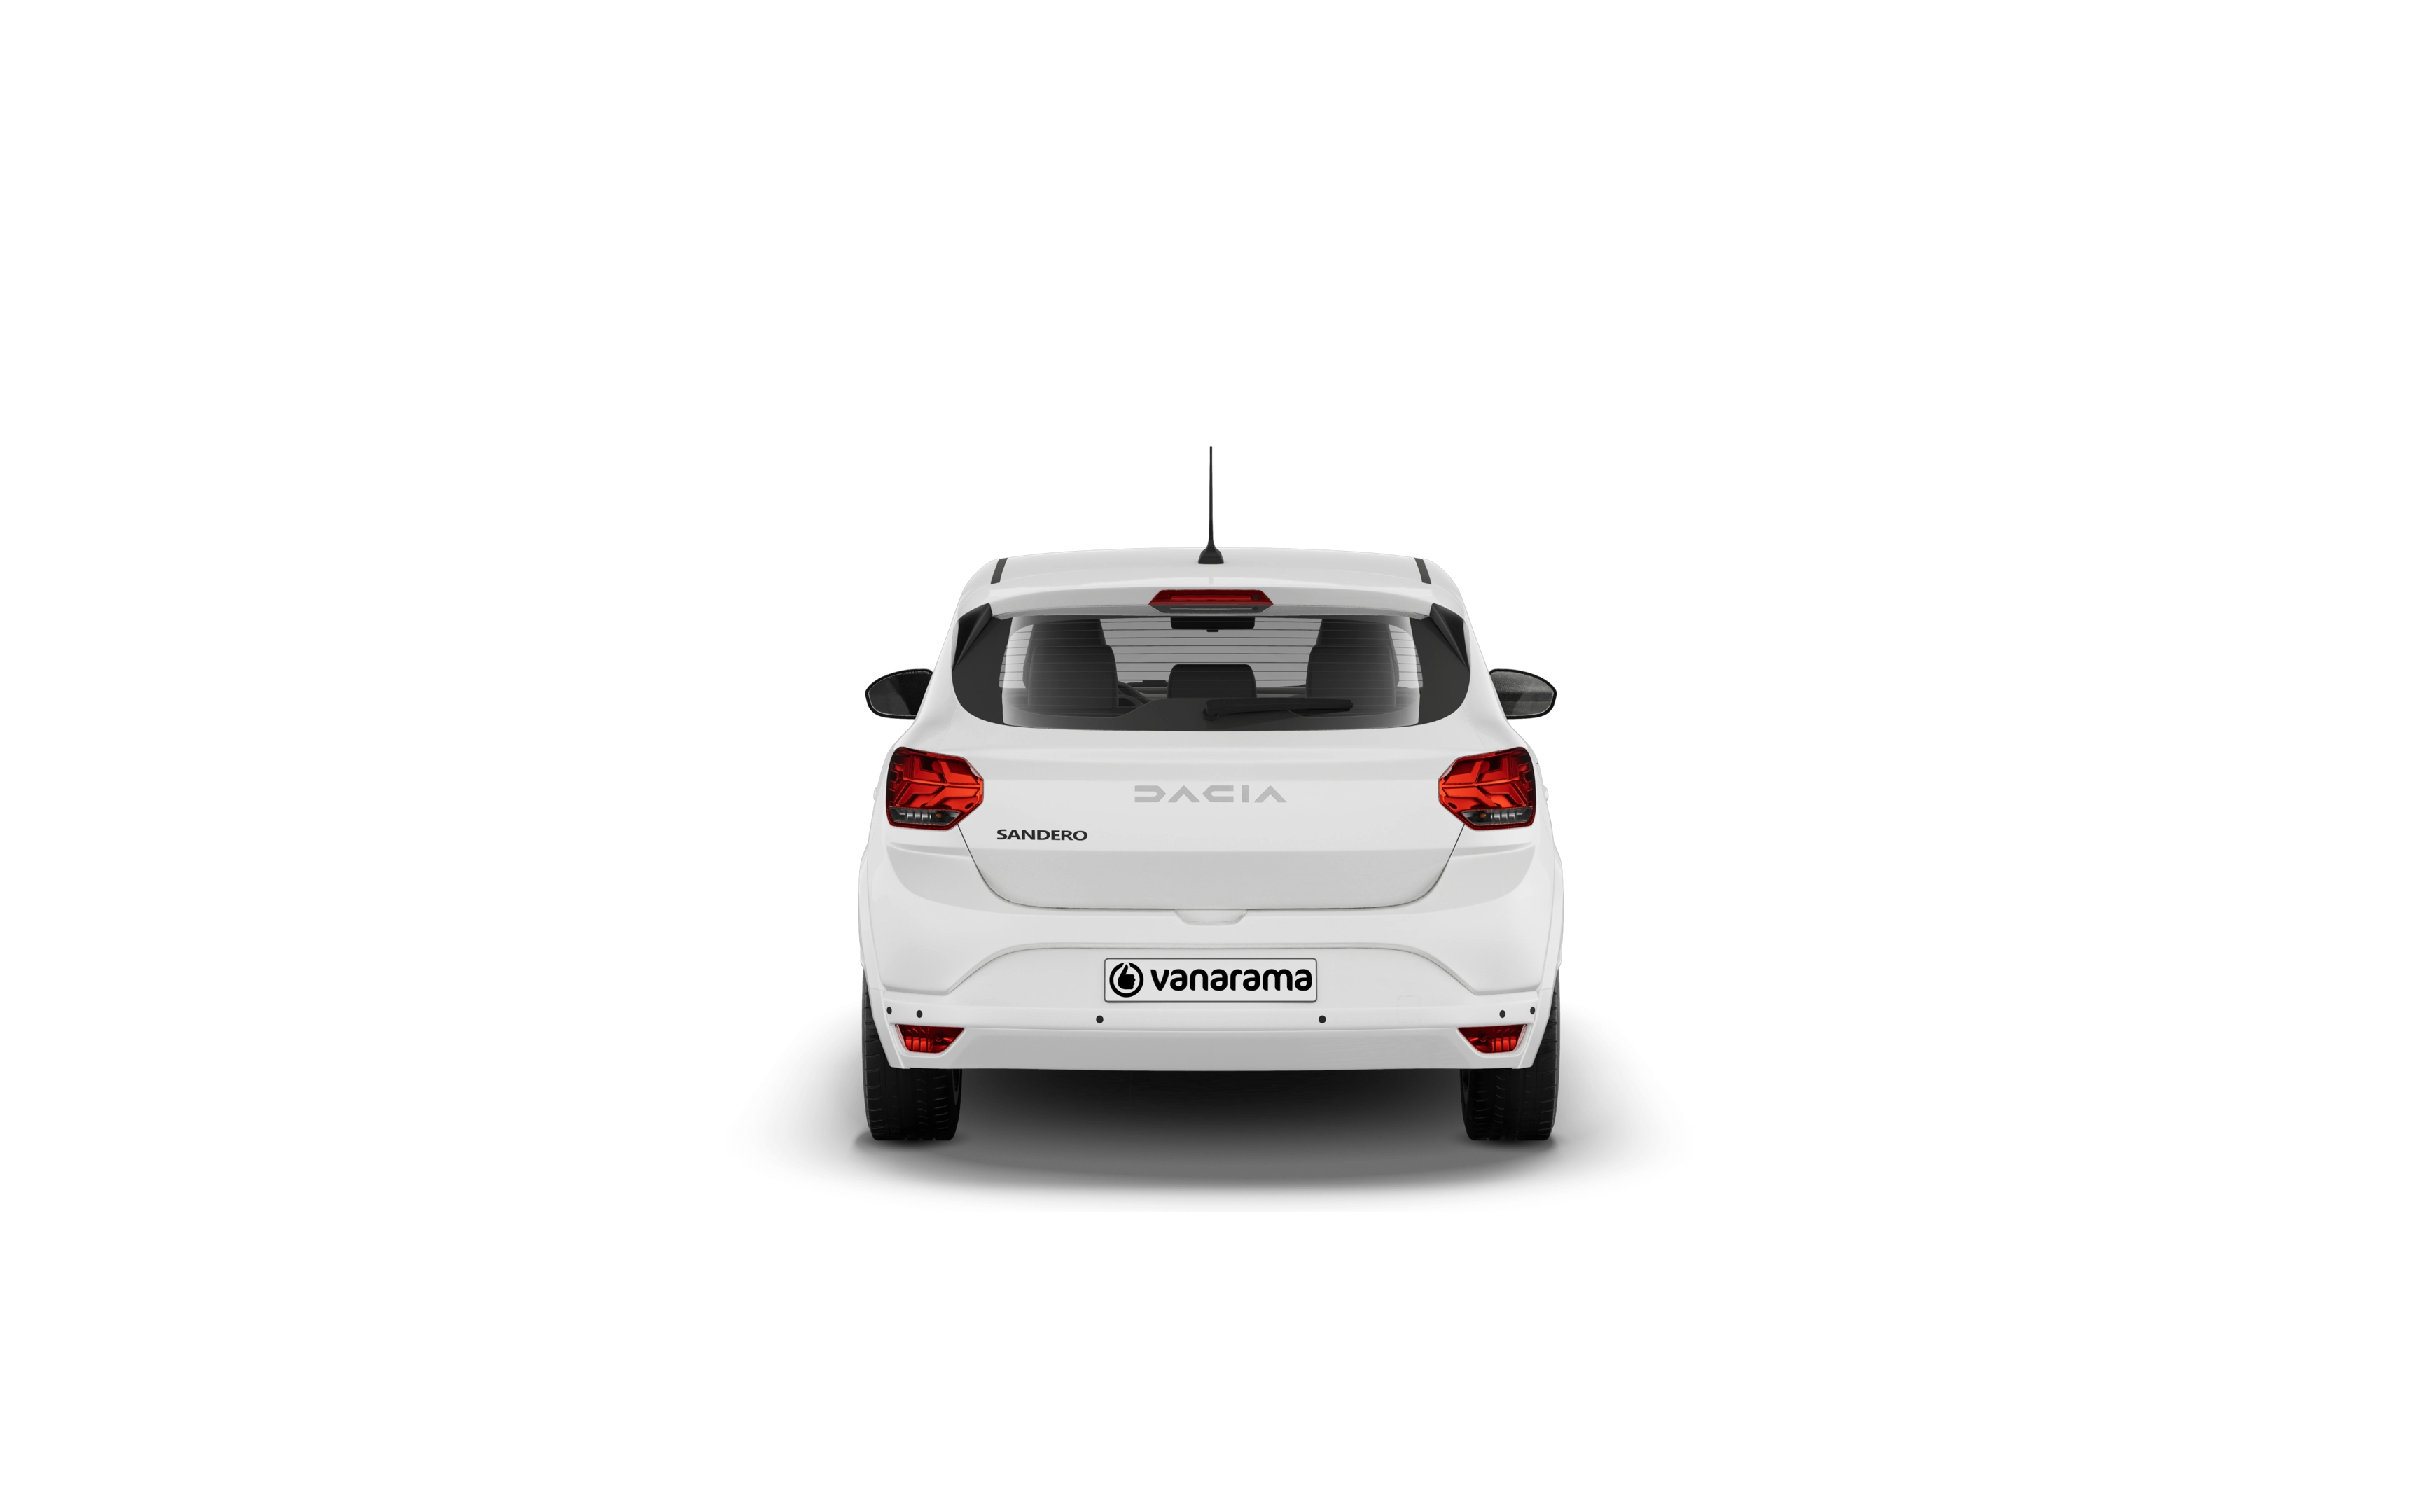 Dacia sandero hatchback 1.0 tce journey 5 doors